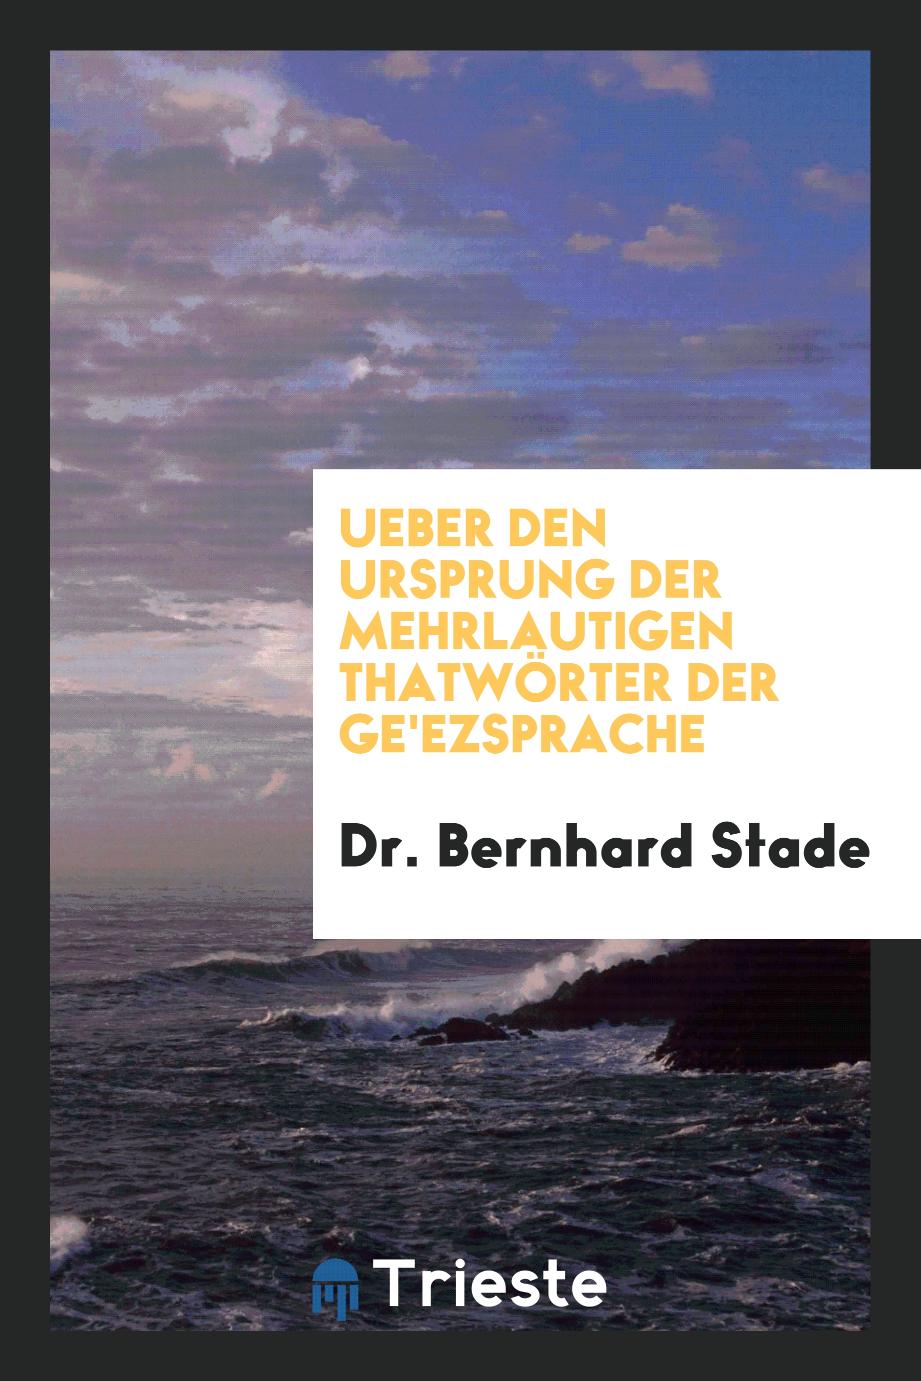 Dr. Bernhard Stade - Ueber den Ursprung der Mehrlautigen Thatwörter der Ge'ezsprache